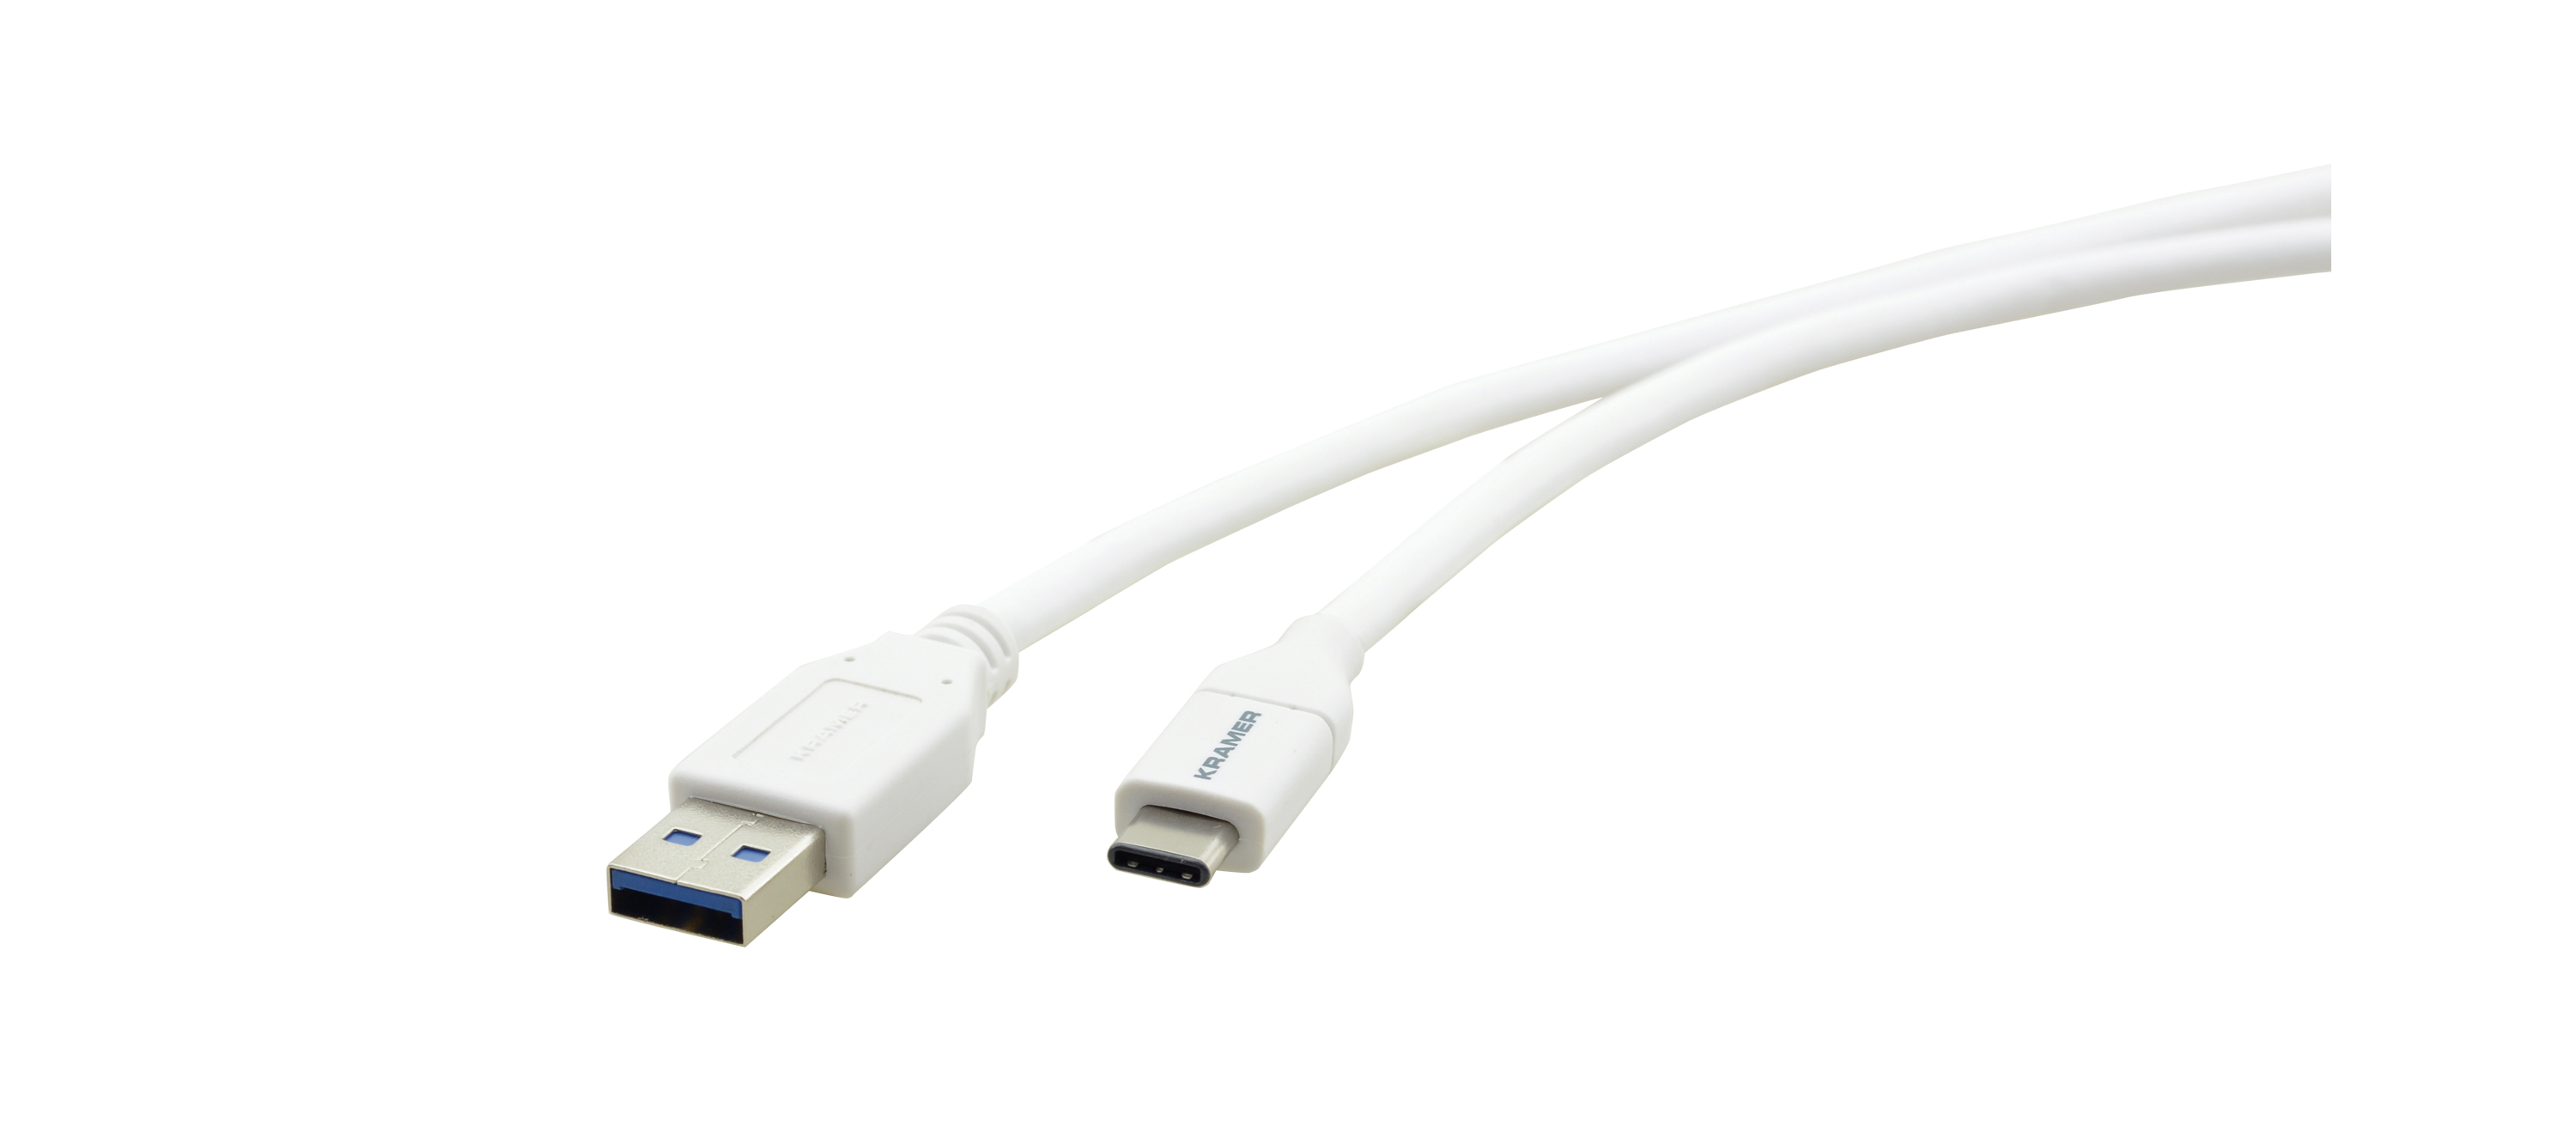 C-USB31/CA-3 USB 3.1 GEN–2 Cables USB–C (M) to USB–A (M) — 3ft